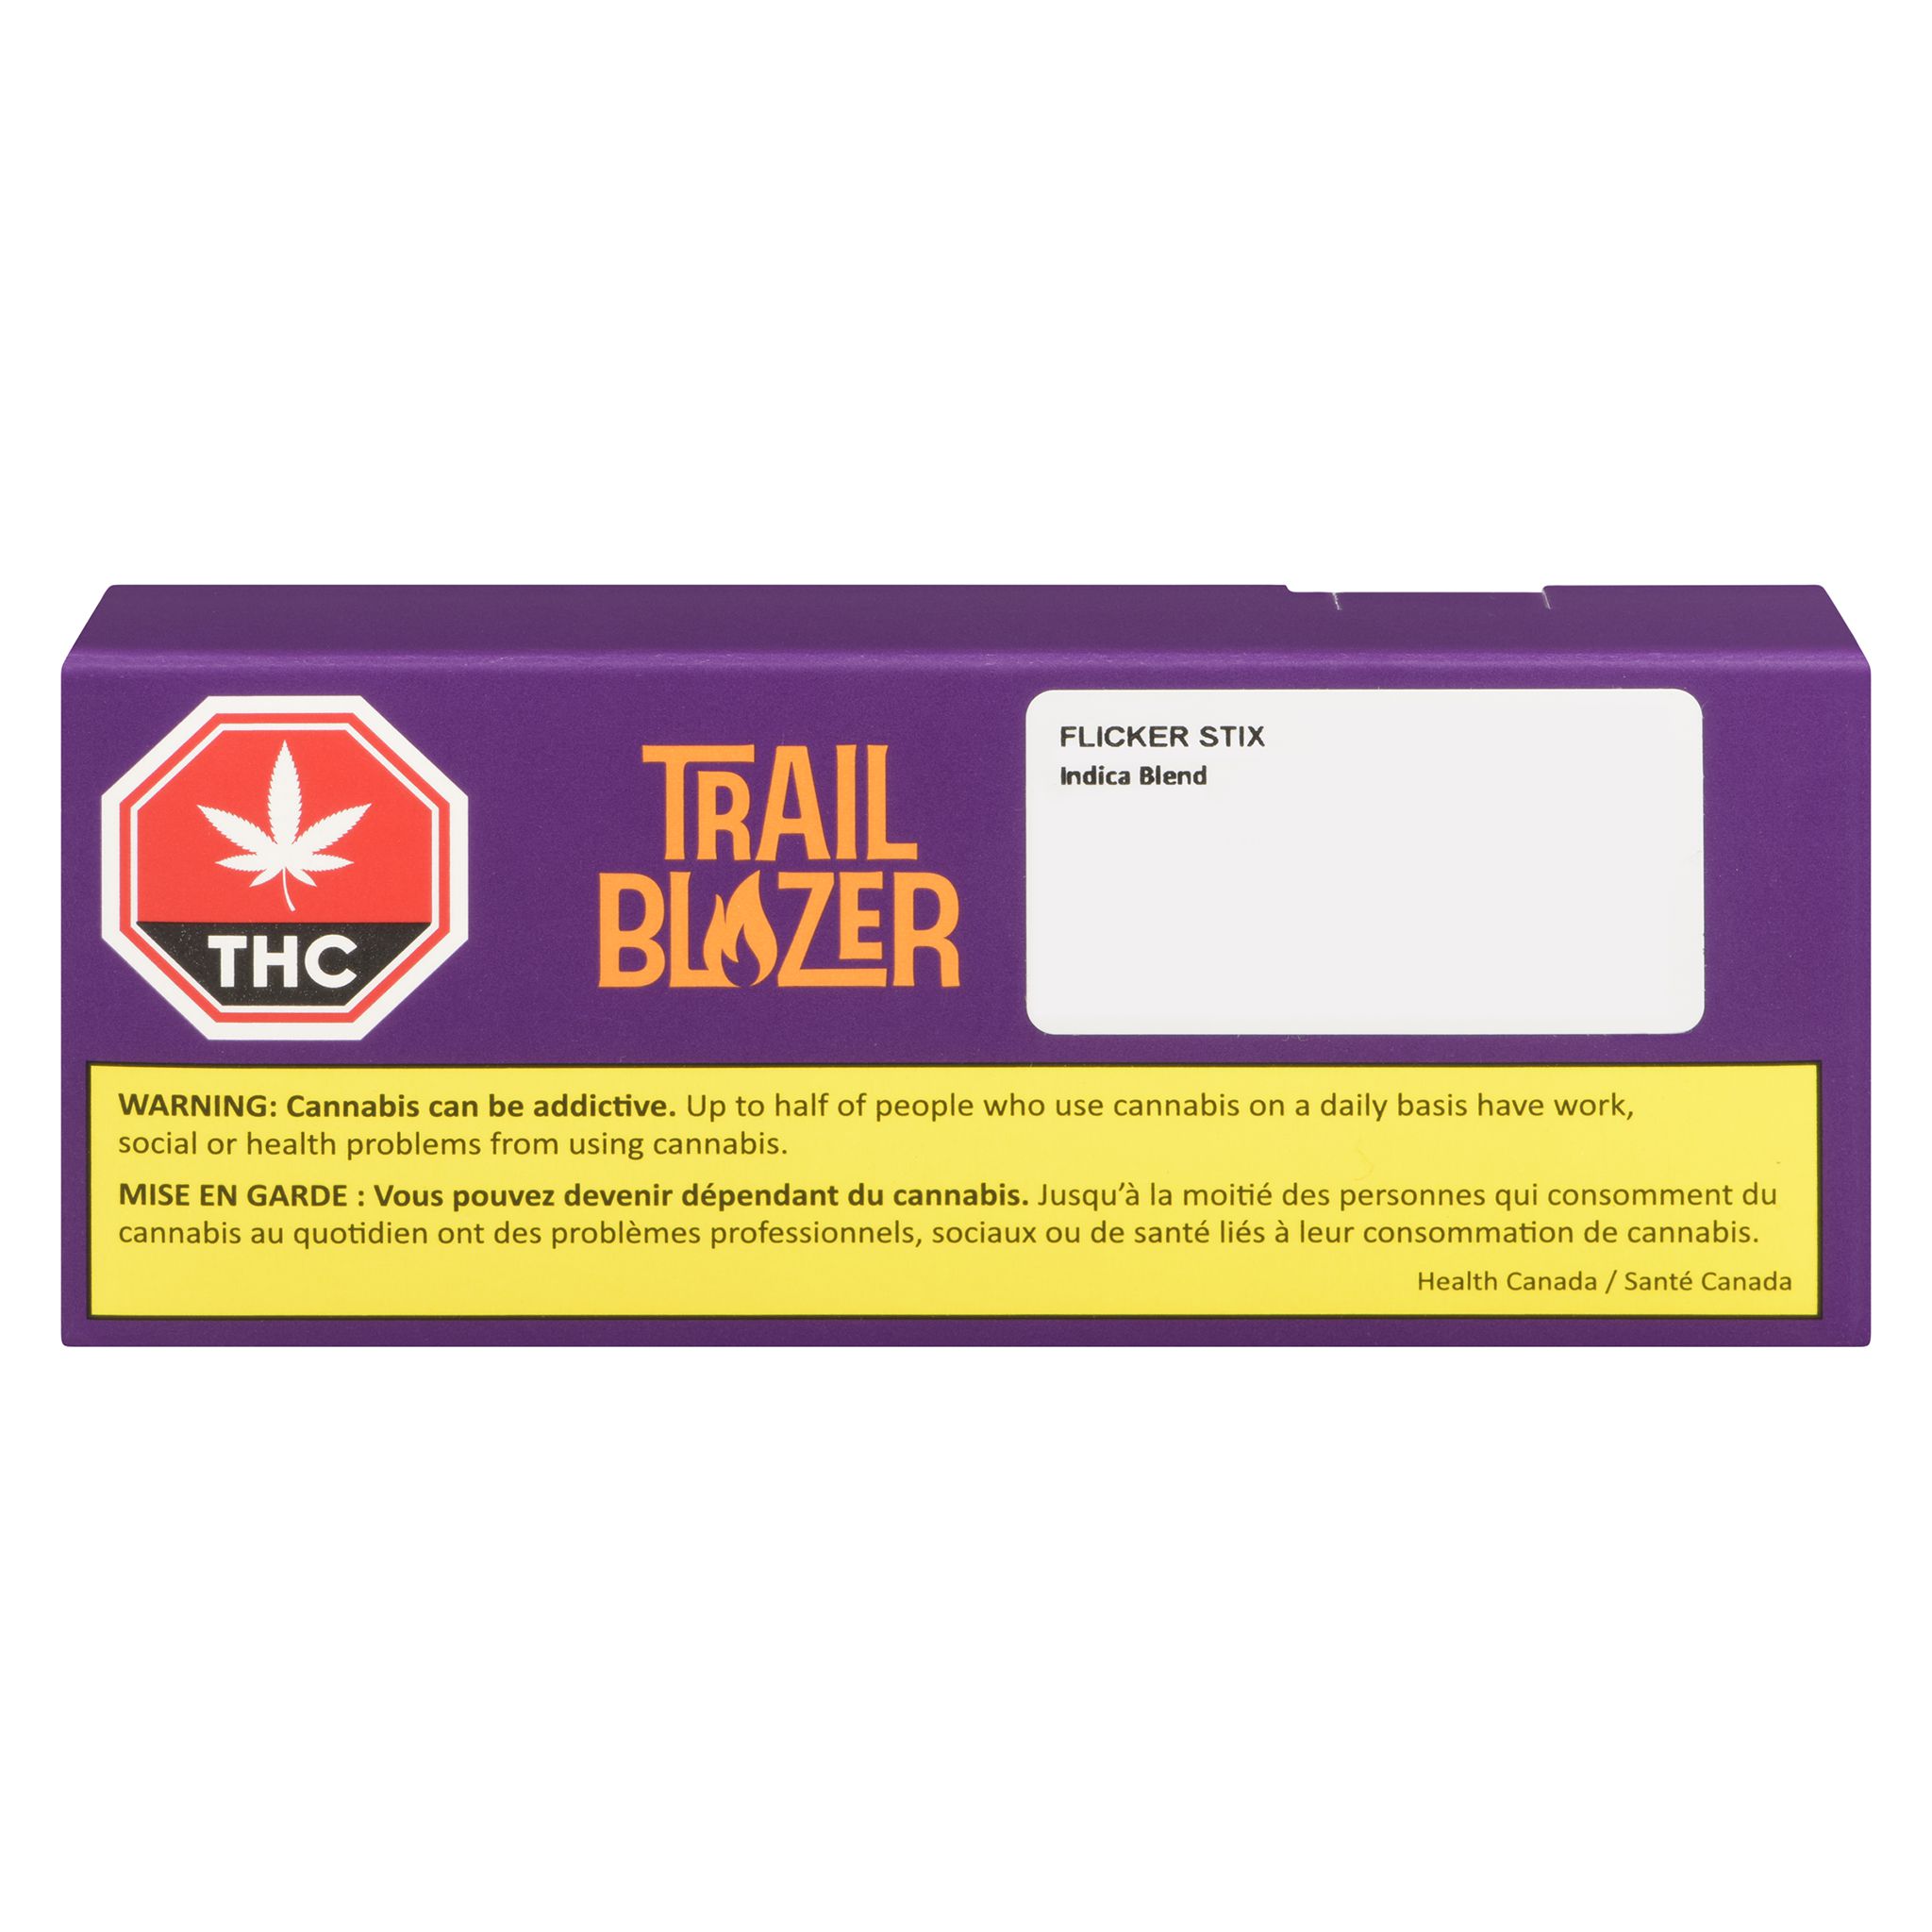 Trailblazer - Flicker Stix Indica - 1x0.5g